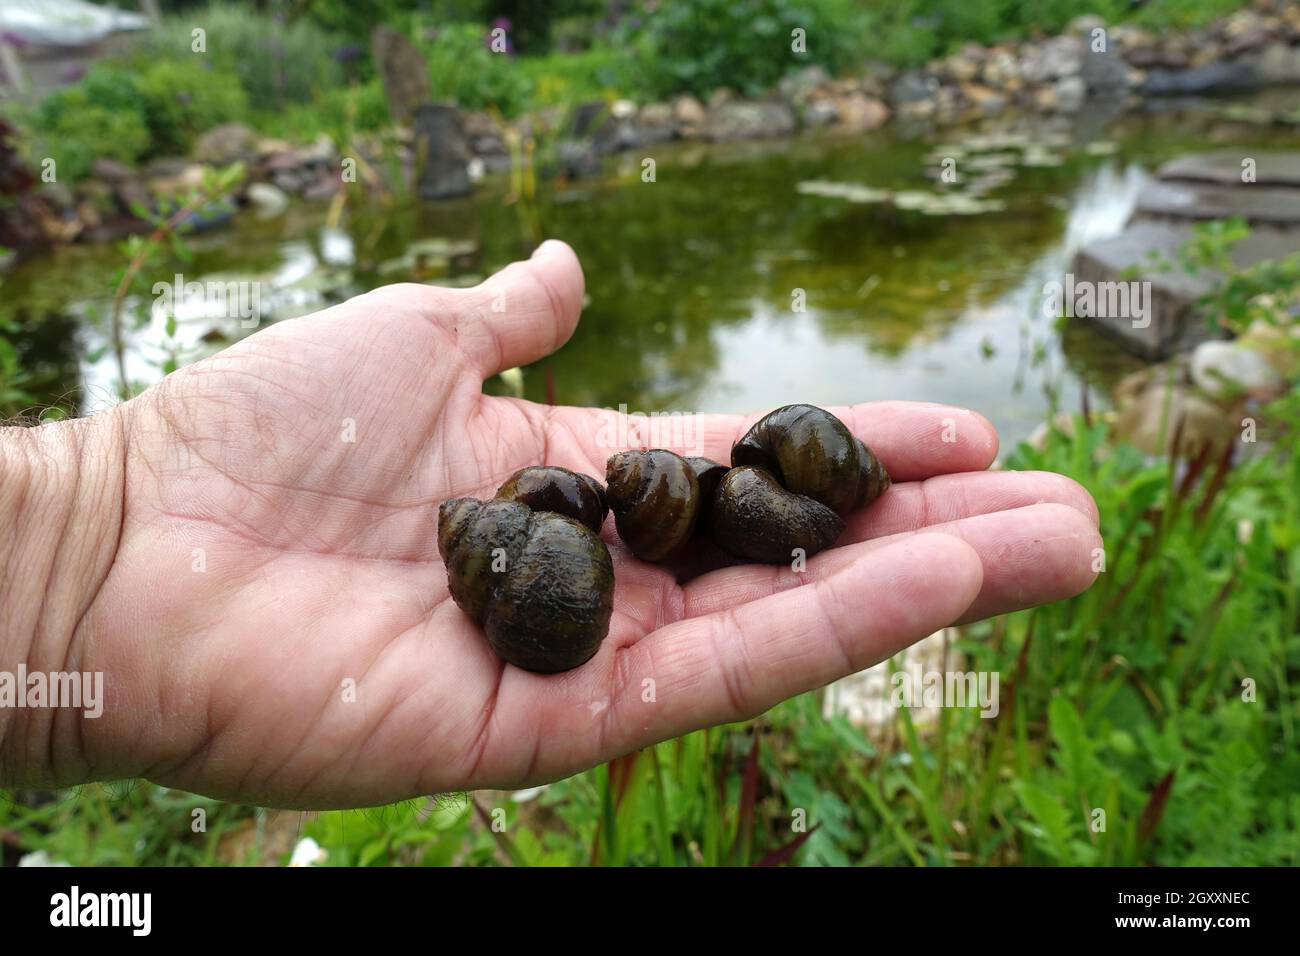 Stumpfe Sumpfdeckelschnecke, auch Flussdeckelschnecke (Viviparus viviparus), auf einer Hand liegend, Weilerswist, Nordrhein-Westfalen, Deutschland Stock Photo